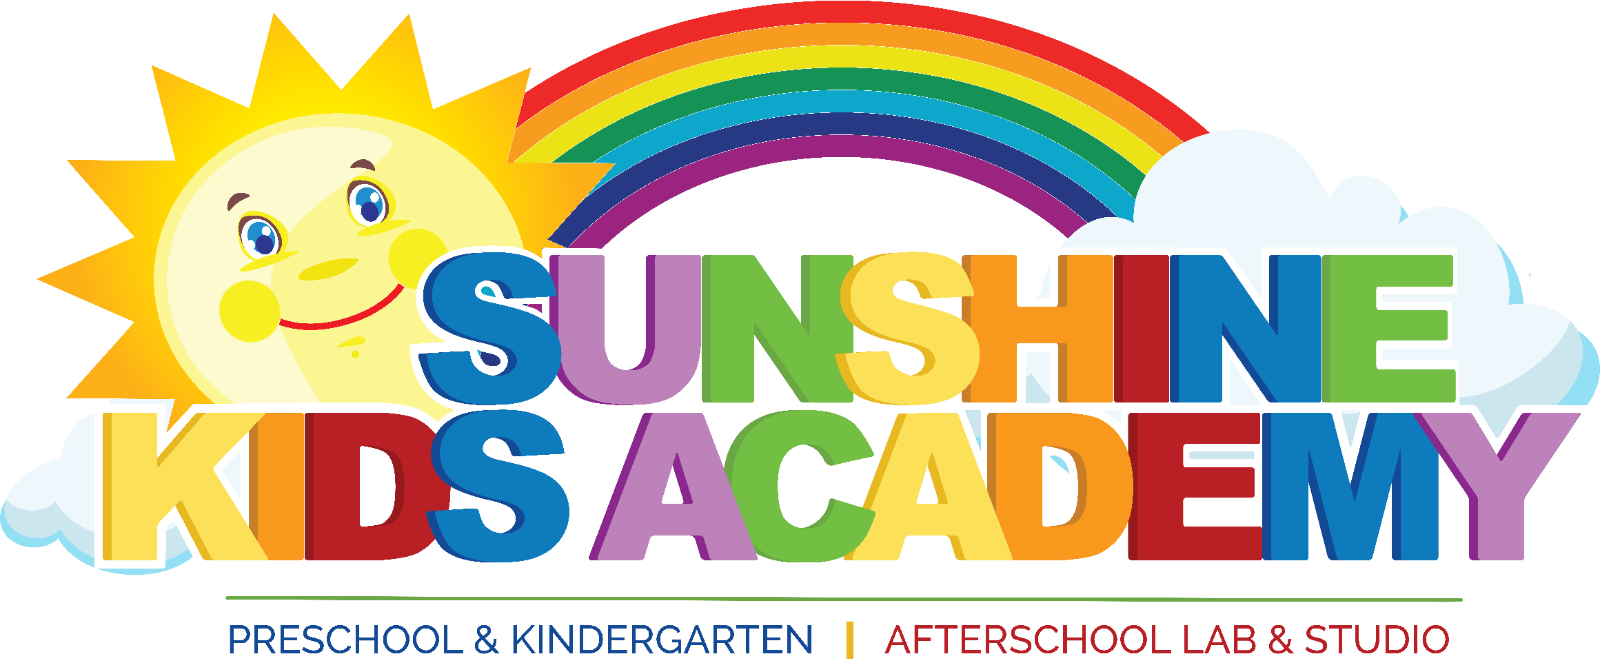 サンシャインキッズアカデミー | Preschool  Kindergarten & Afterschool